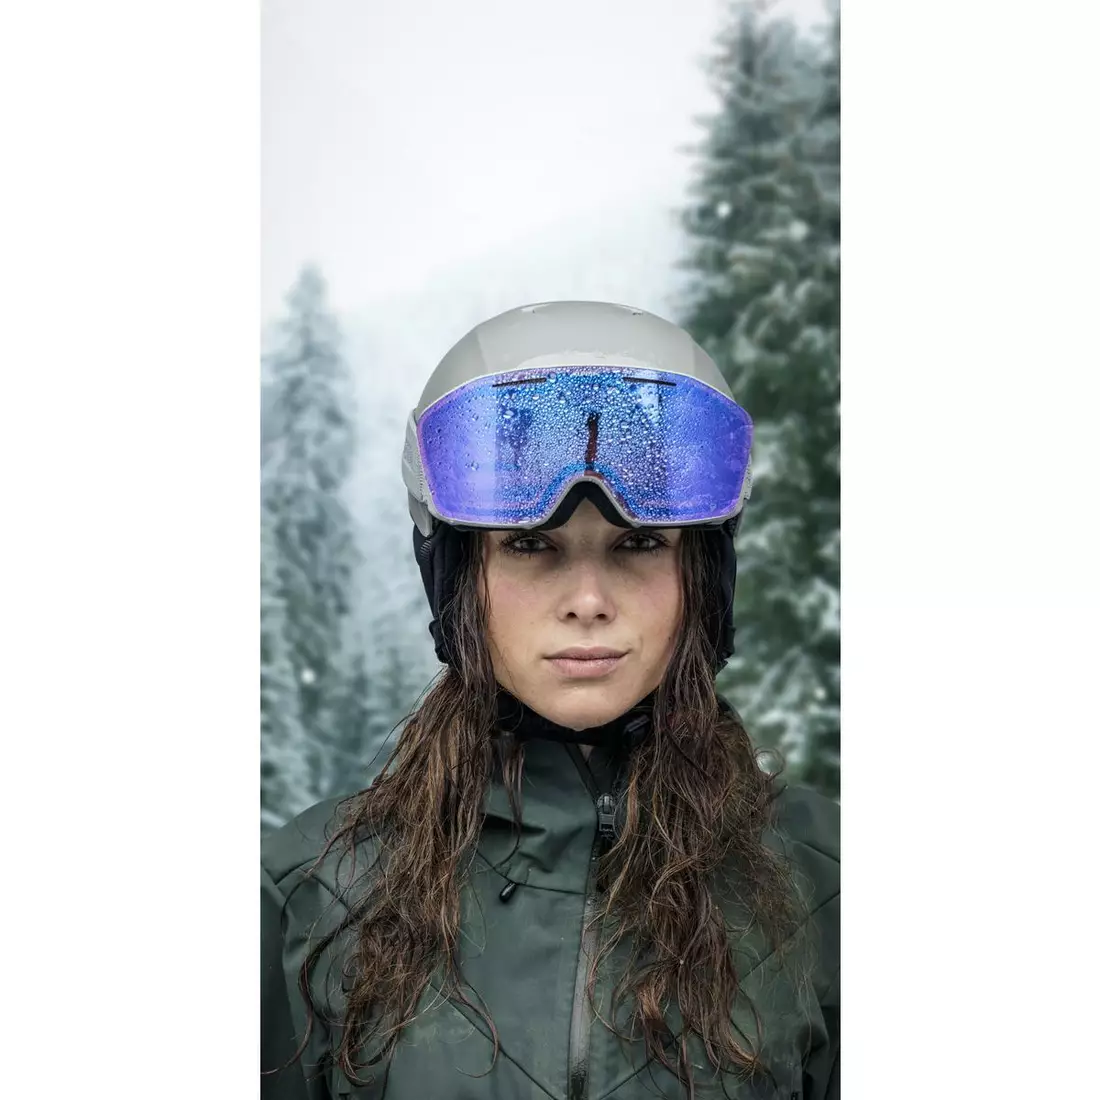 ALPINA ski/snowboard goggles, contrast enhancement NENDAZ Q-LITE BLACK-YELLOW MATT glass Q-LITE RED S2